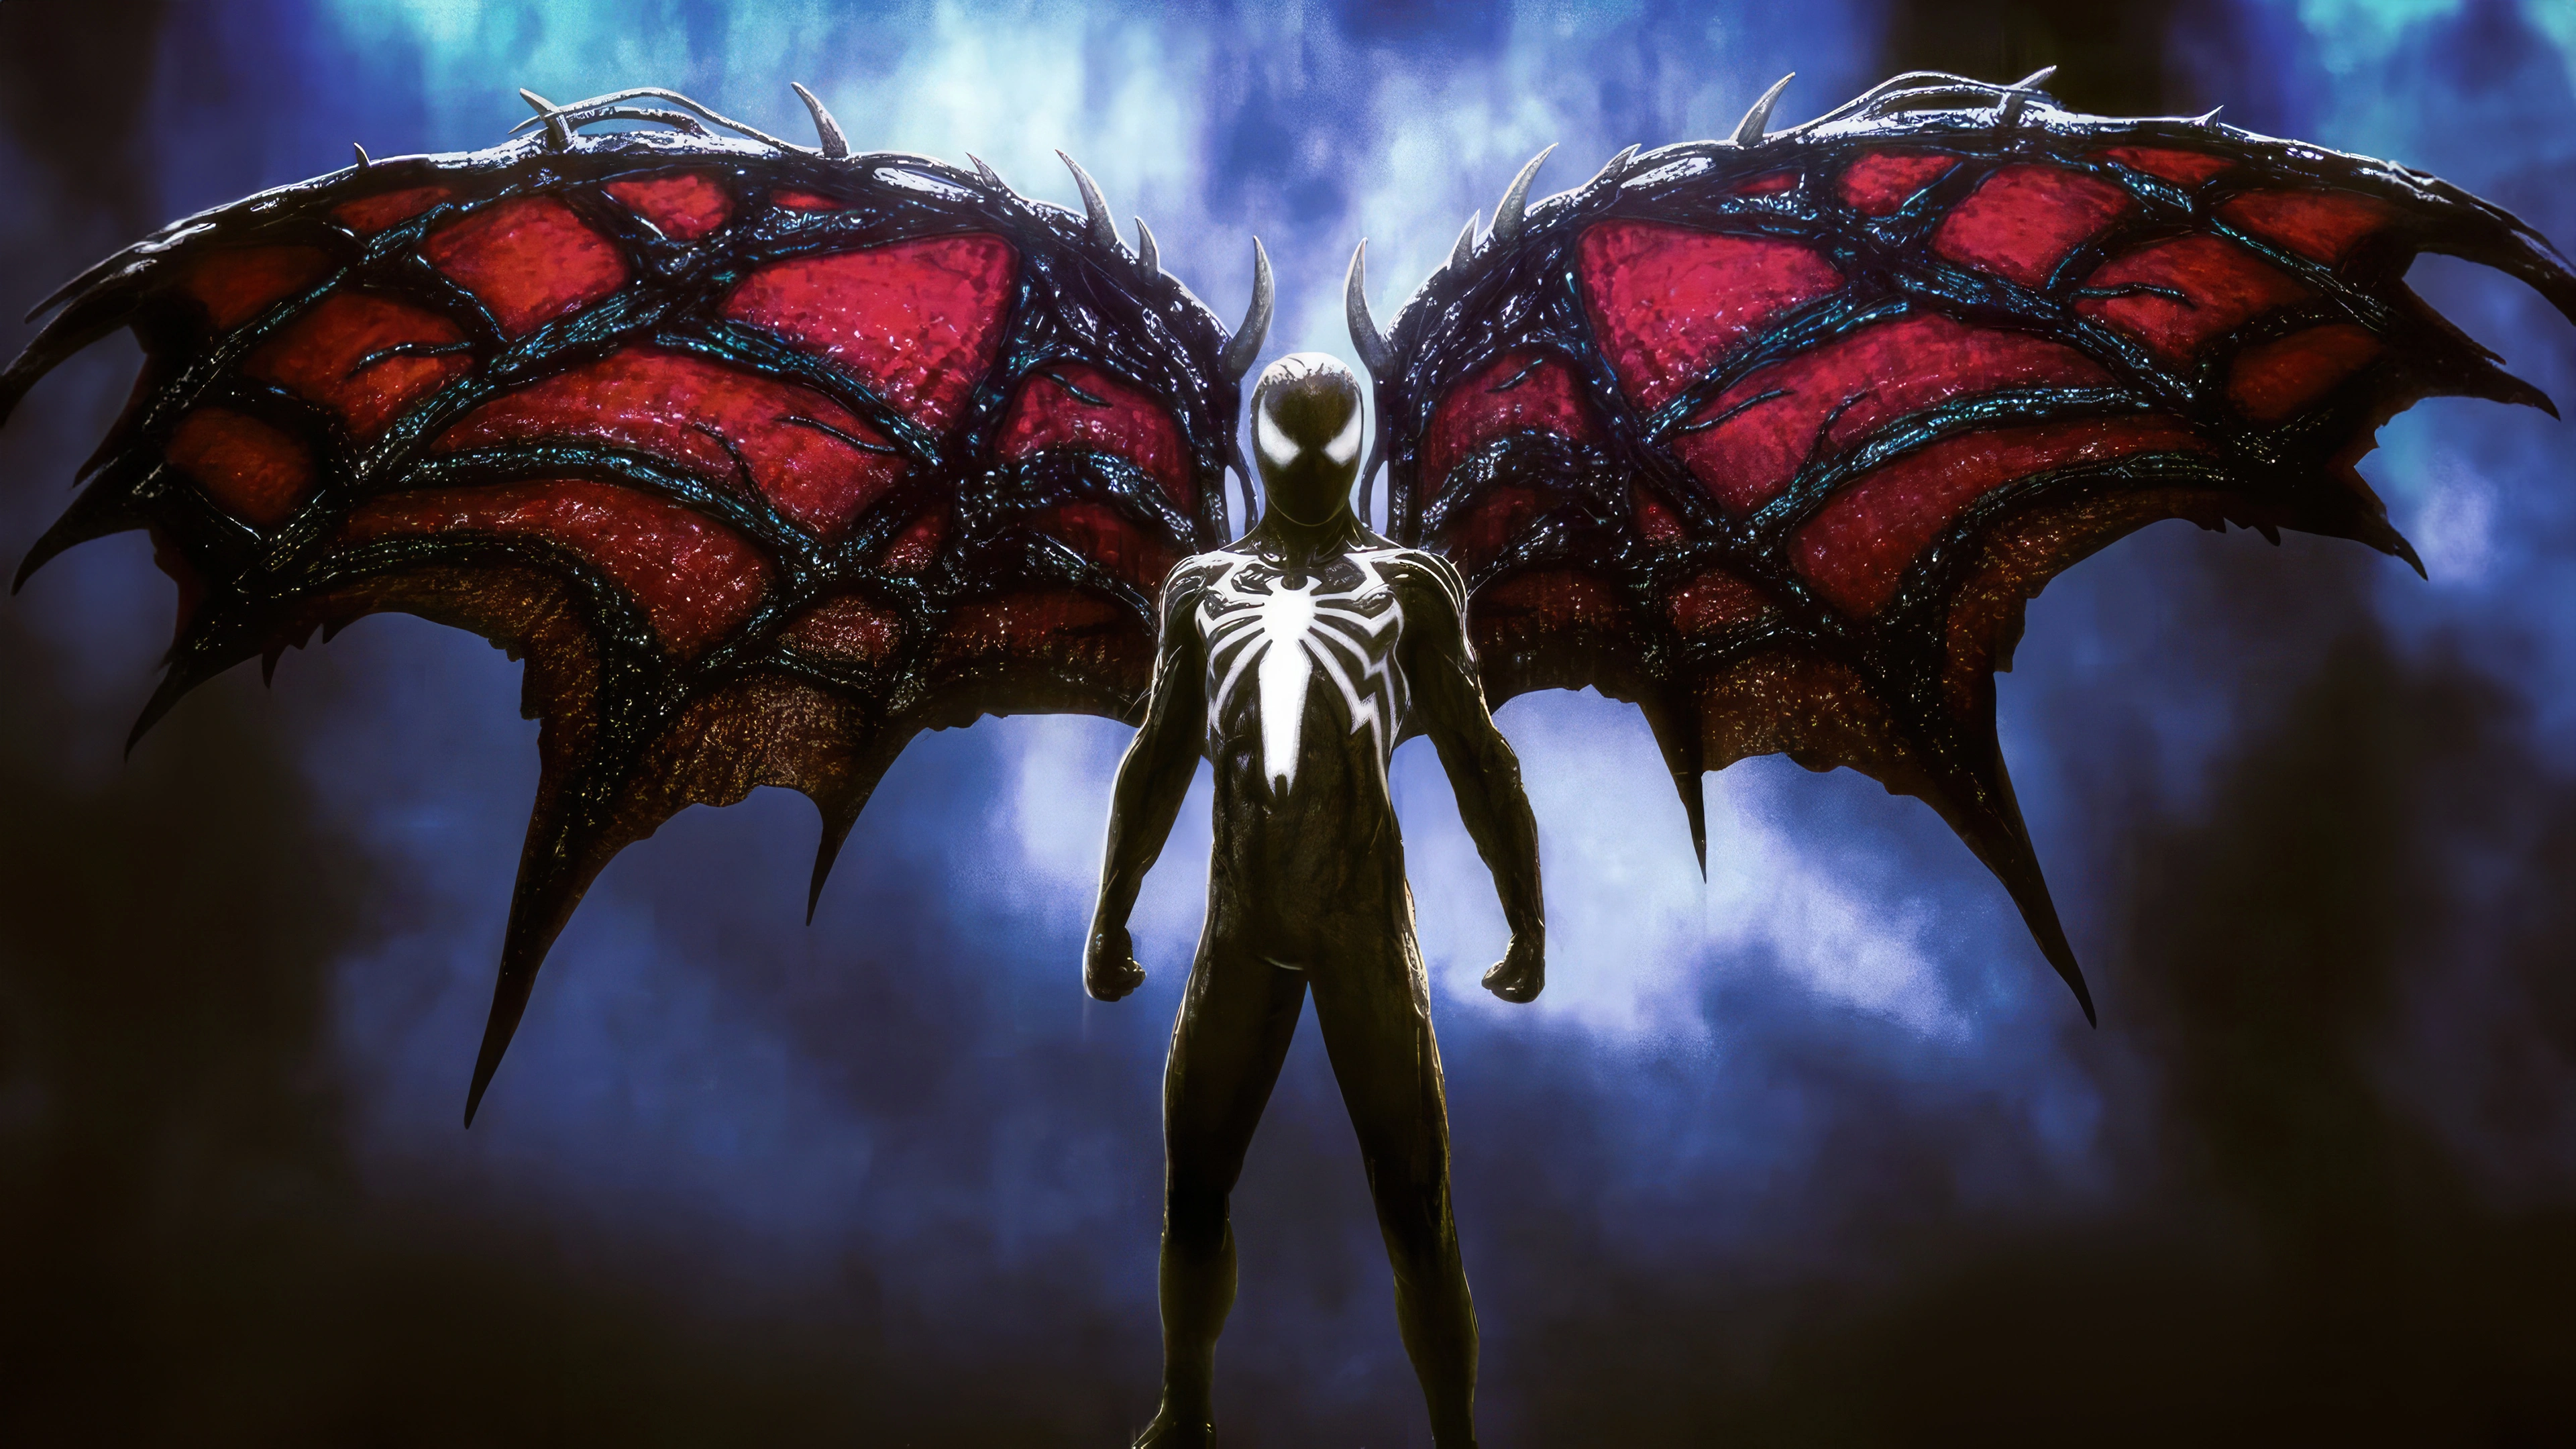 spider man with venom wings in spider man 2 xo.jpg